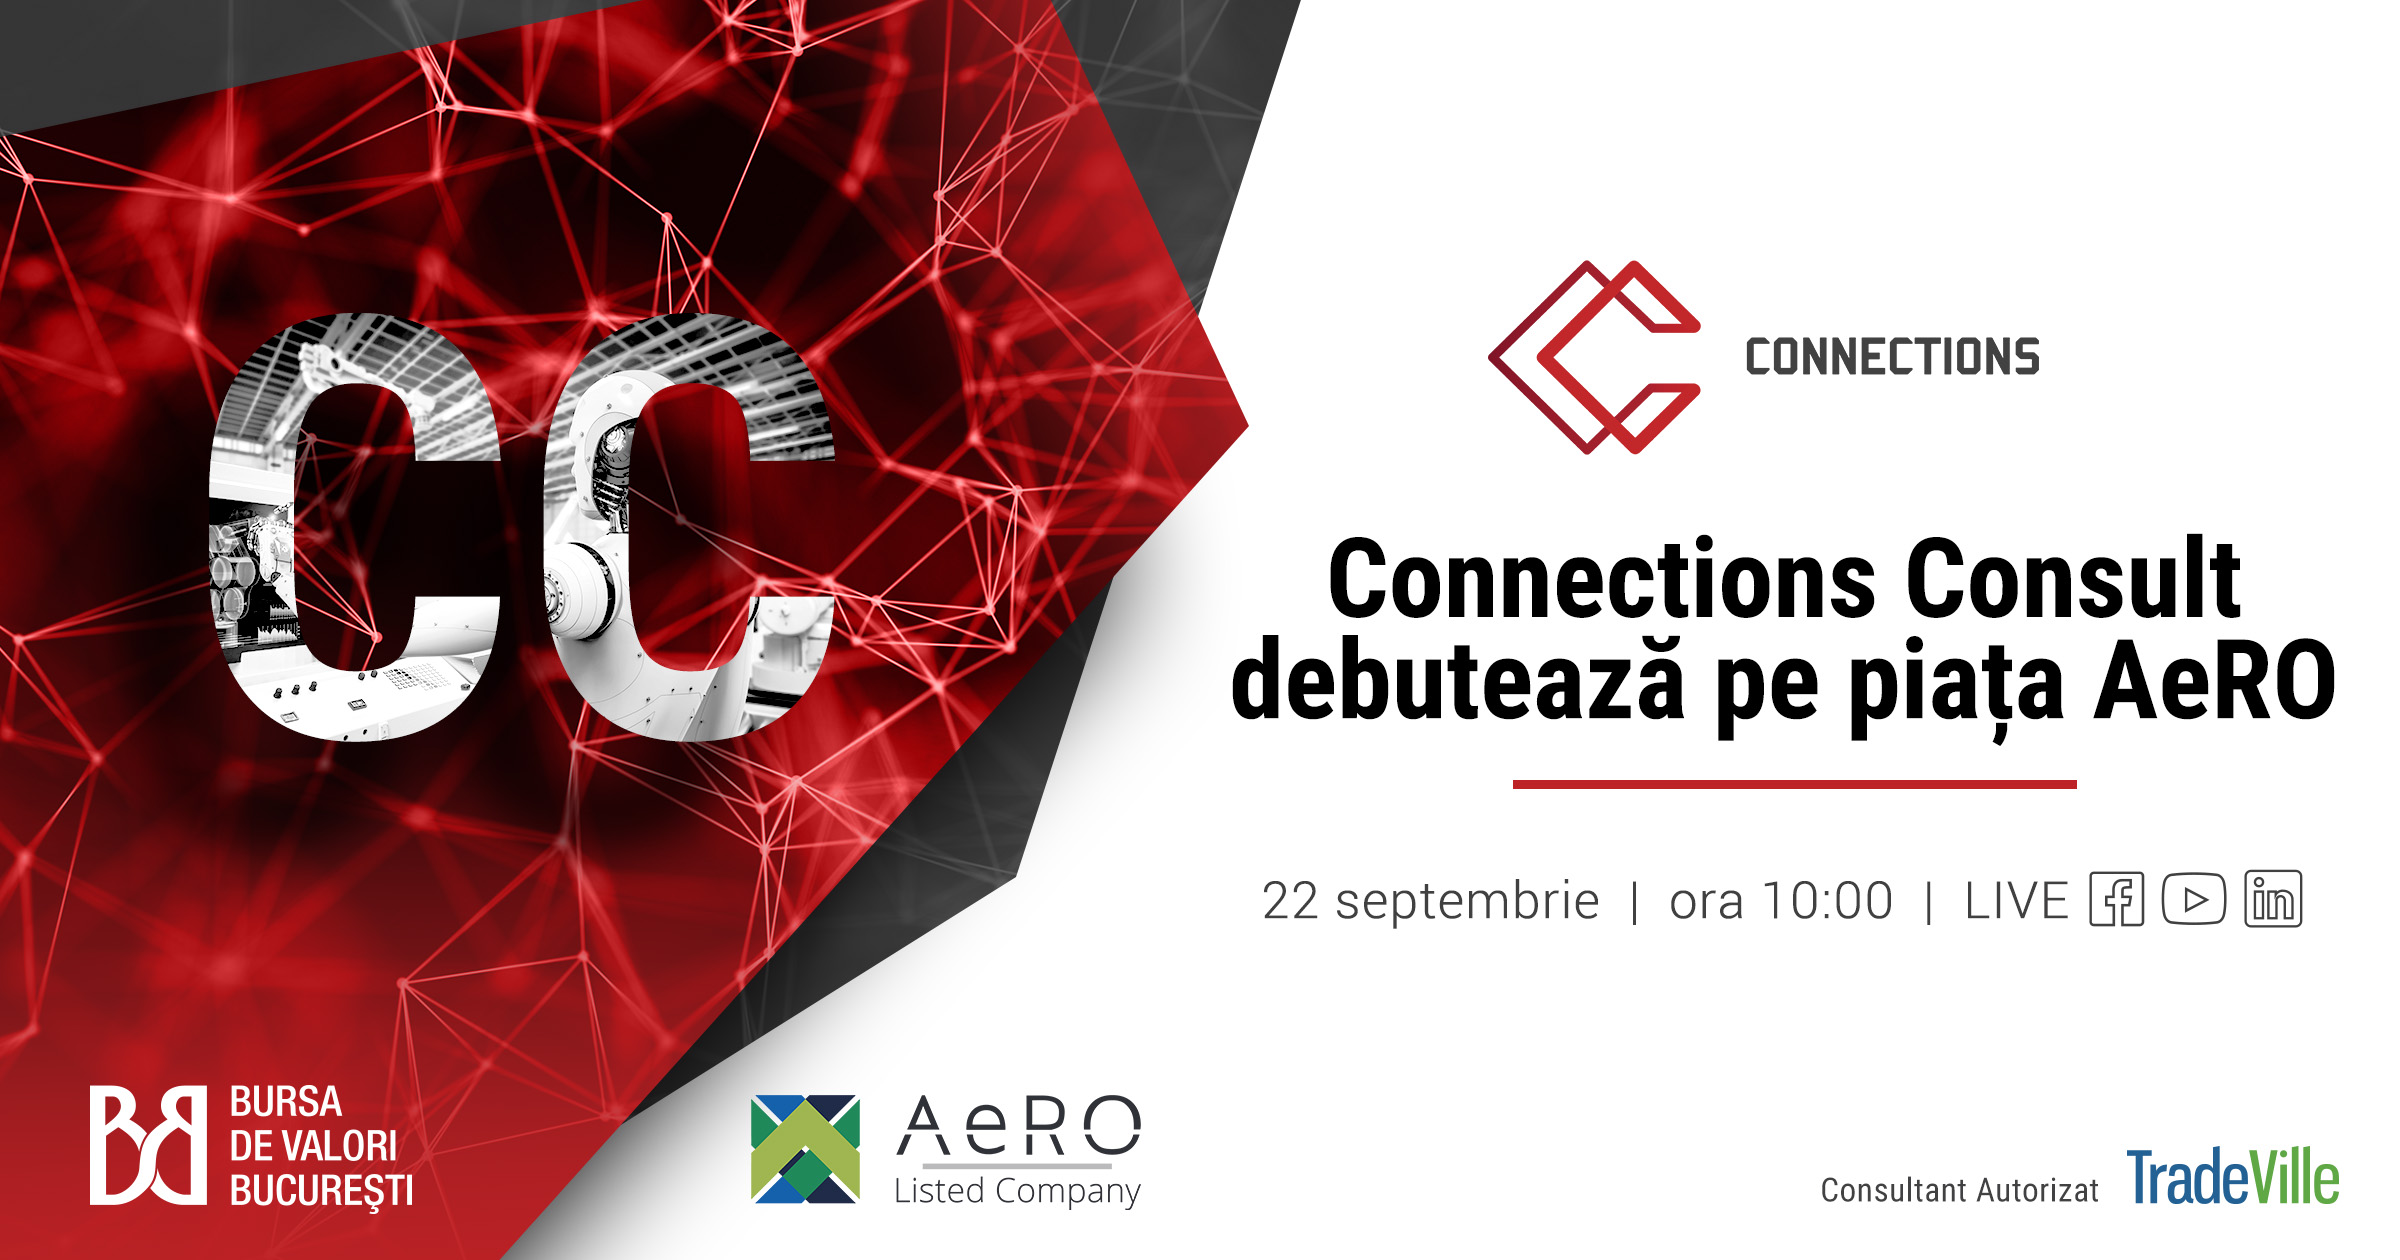 Connections Consult debutează pe piața AeRO